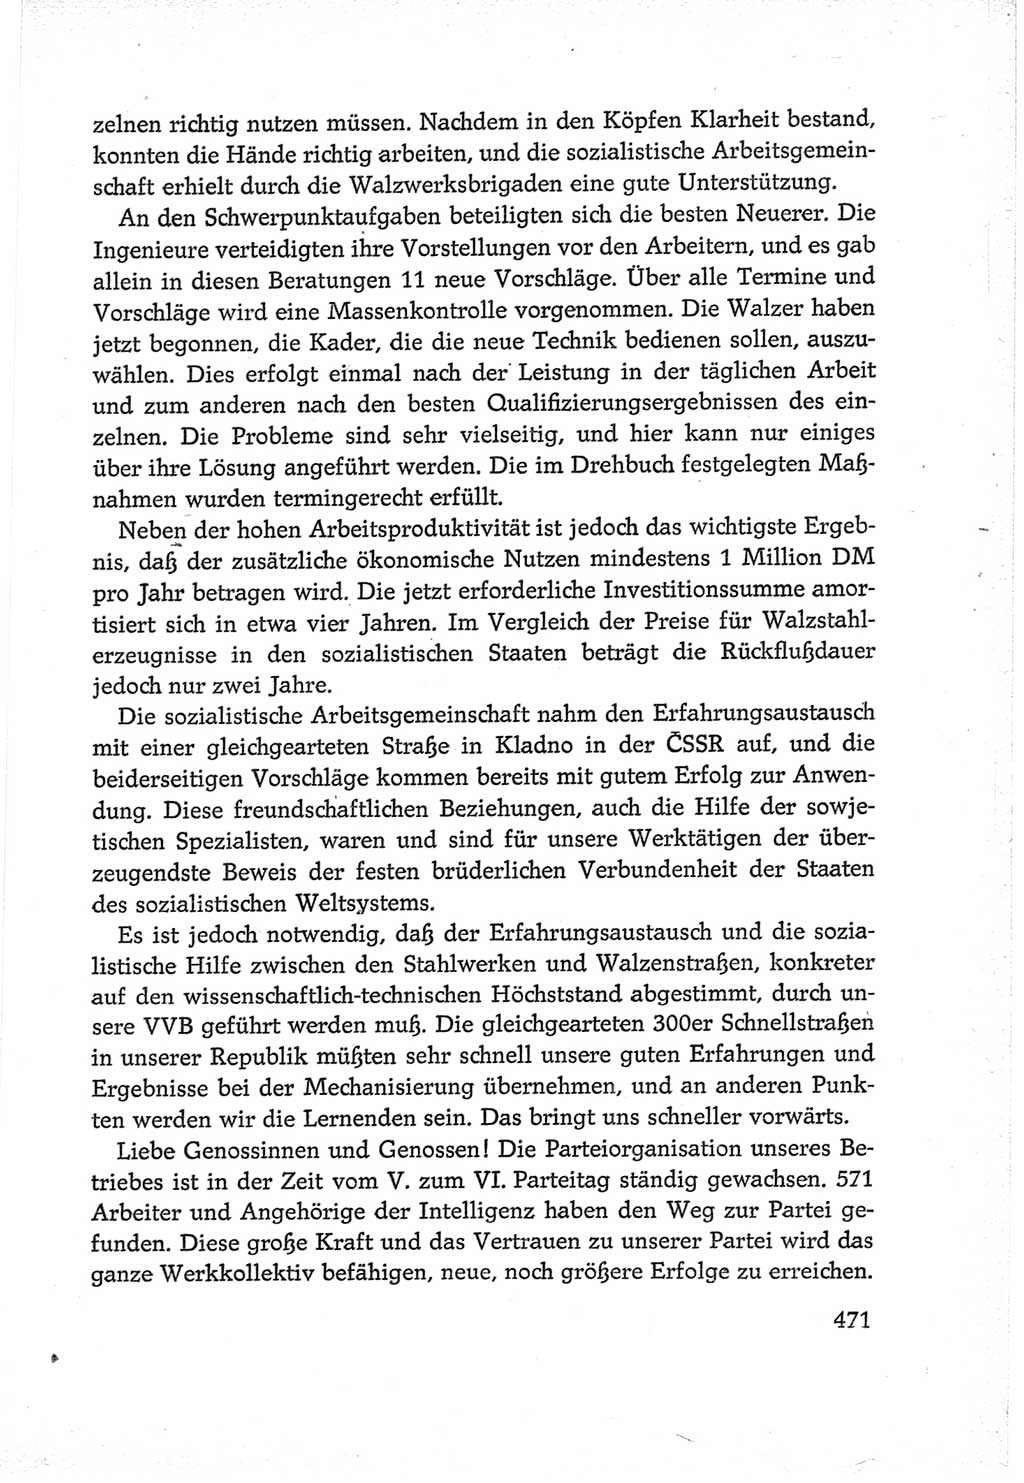 Protokoll der Verhandlungen des Ⅵ. Parteitages der Sozialistischen Einheitspartei Deutschlands (SED) [Deutsche Demokratische Republik (DDR)] 1963, Band Ⅲ, Seite 471 (Prot. Verh. Ⅵ. PT SED DDR 1963, Bd. Ⅲ, S. 471)